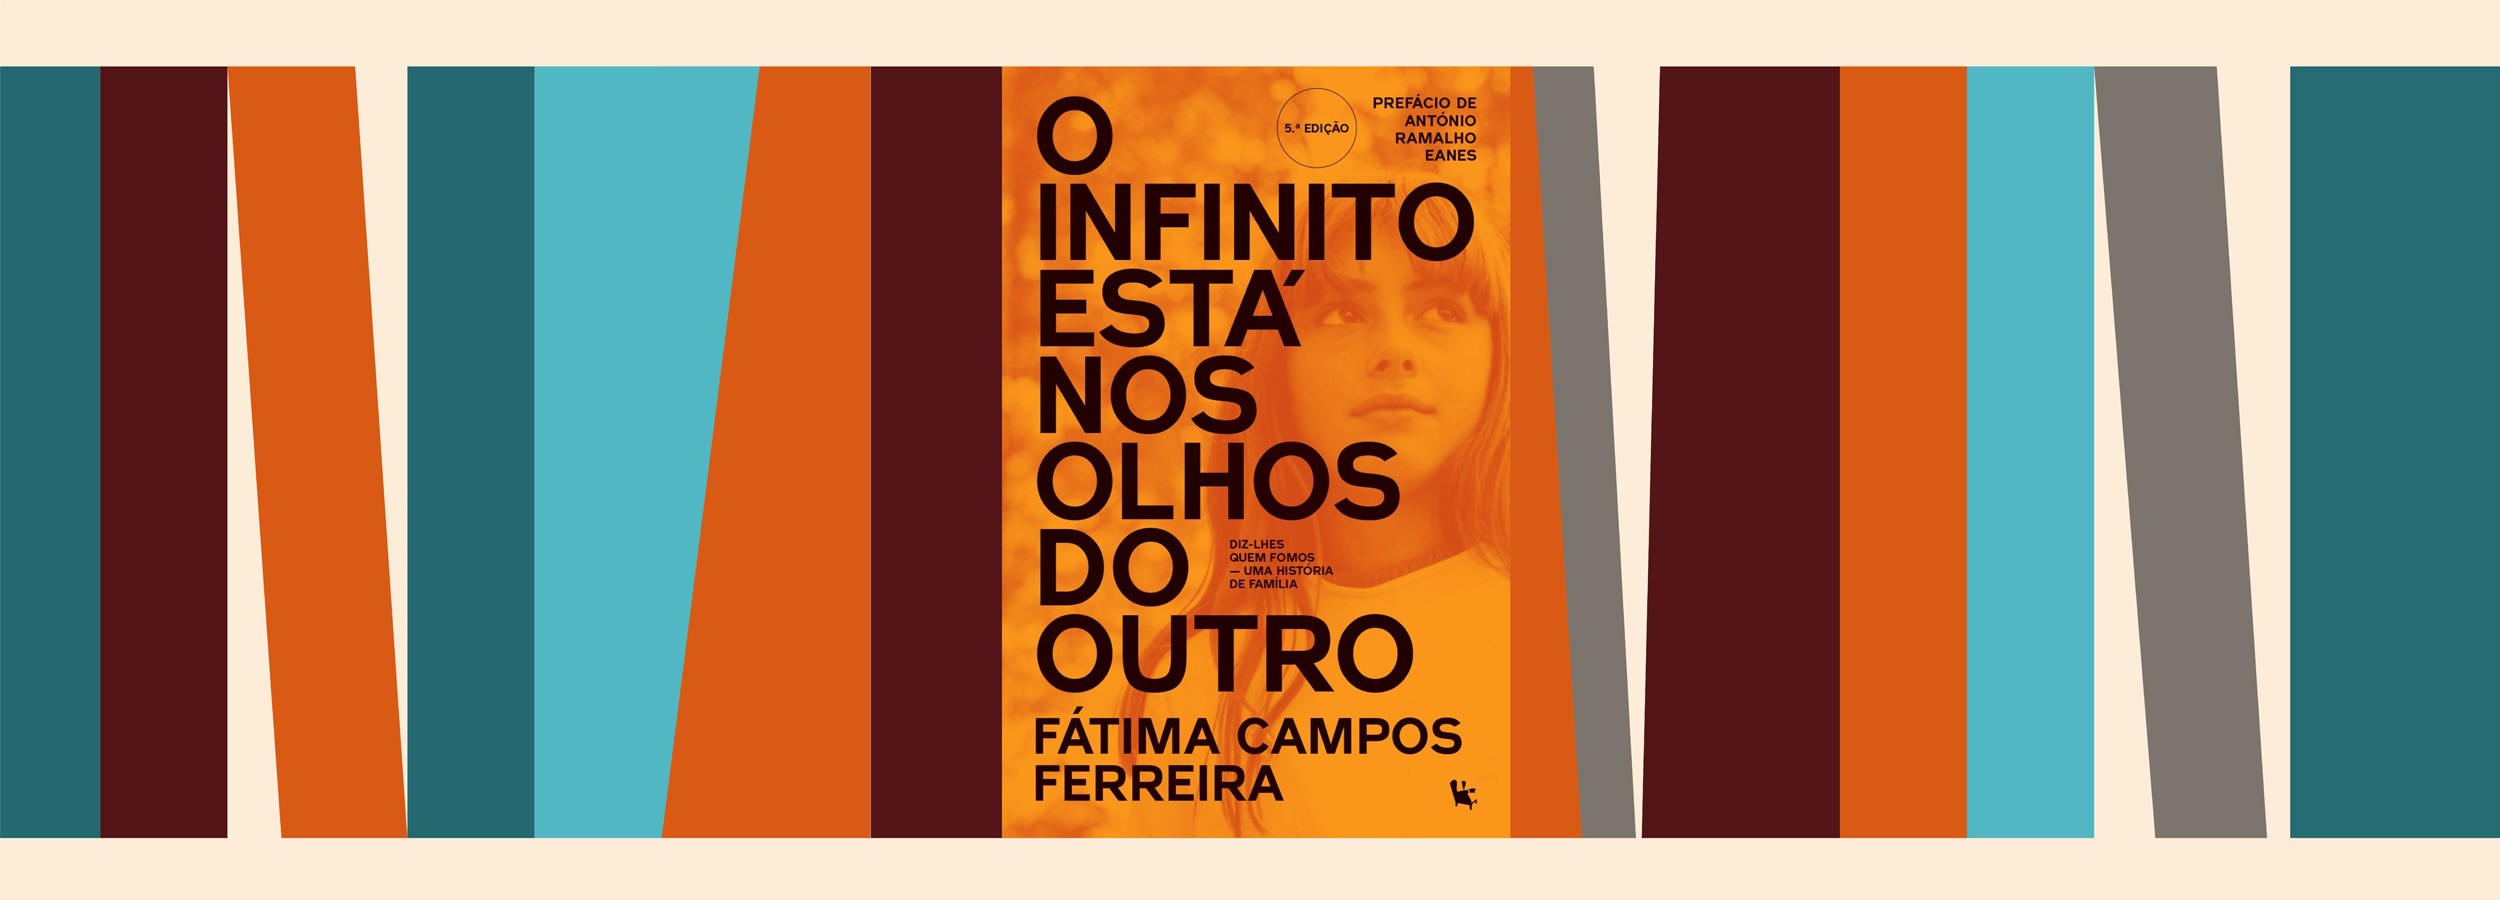 Apresentação do livro “O infinito está nos olhos dos outros”, com a presença da autora Fátima Cam...